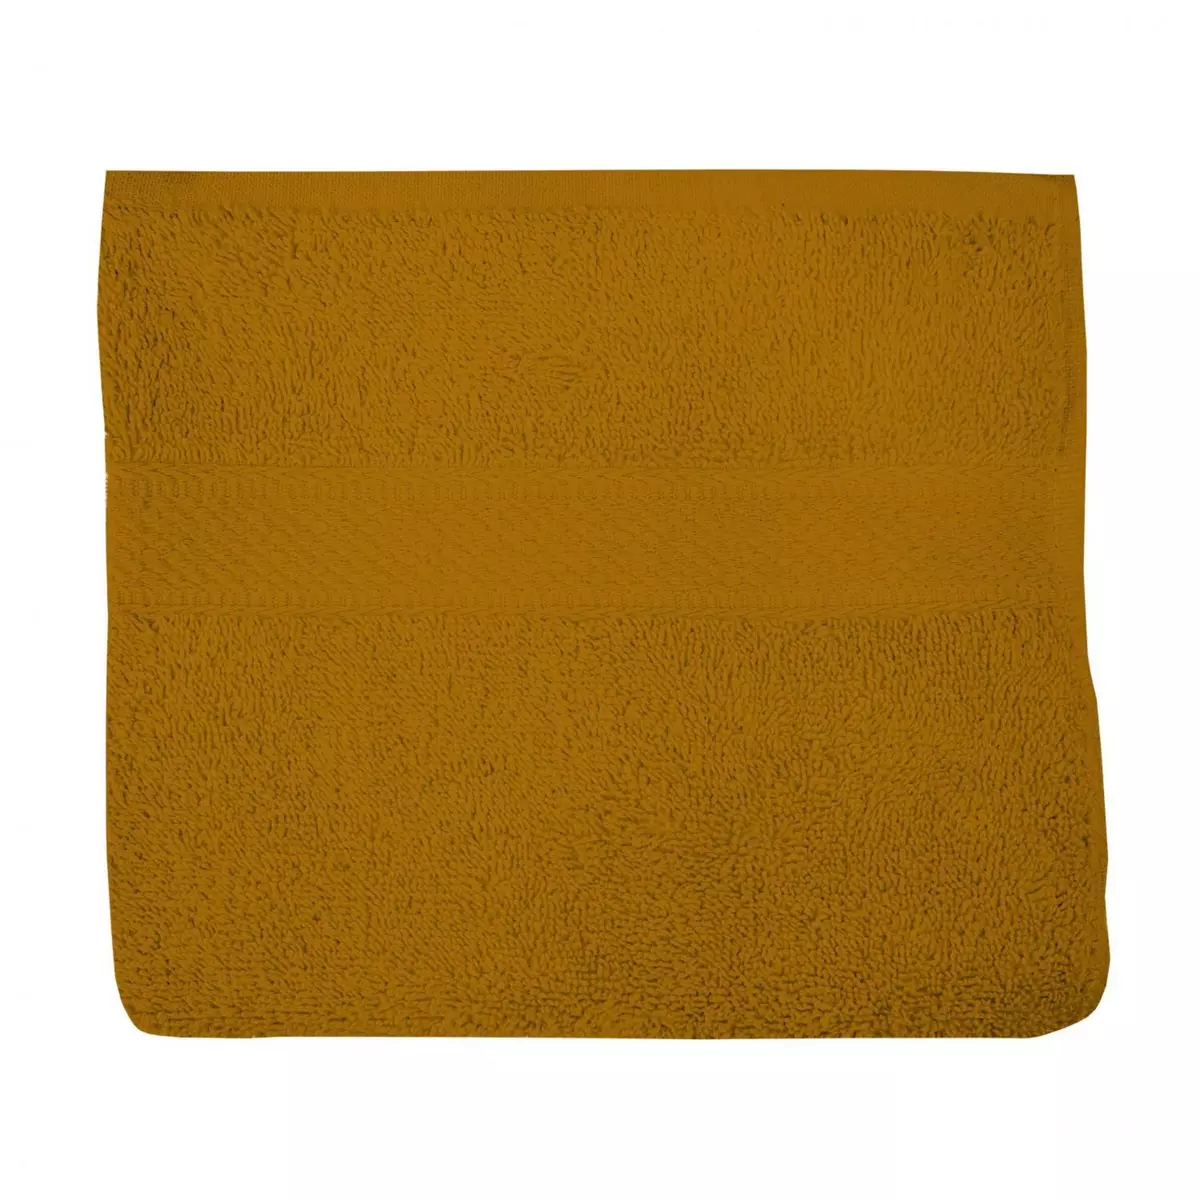 SOLEIL D'OCRE Serviette de toilette en coton 500 gr/m2 50x90 cm LAGUNE moutarde, par Soleil d'ocre